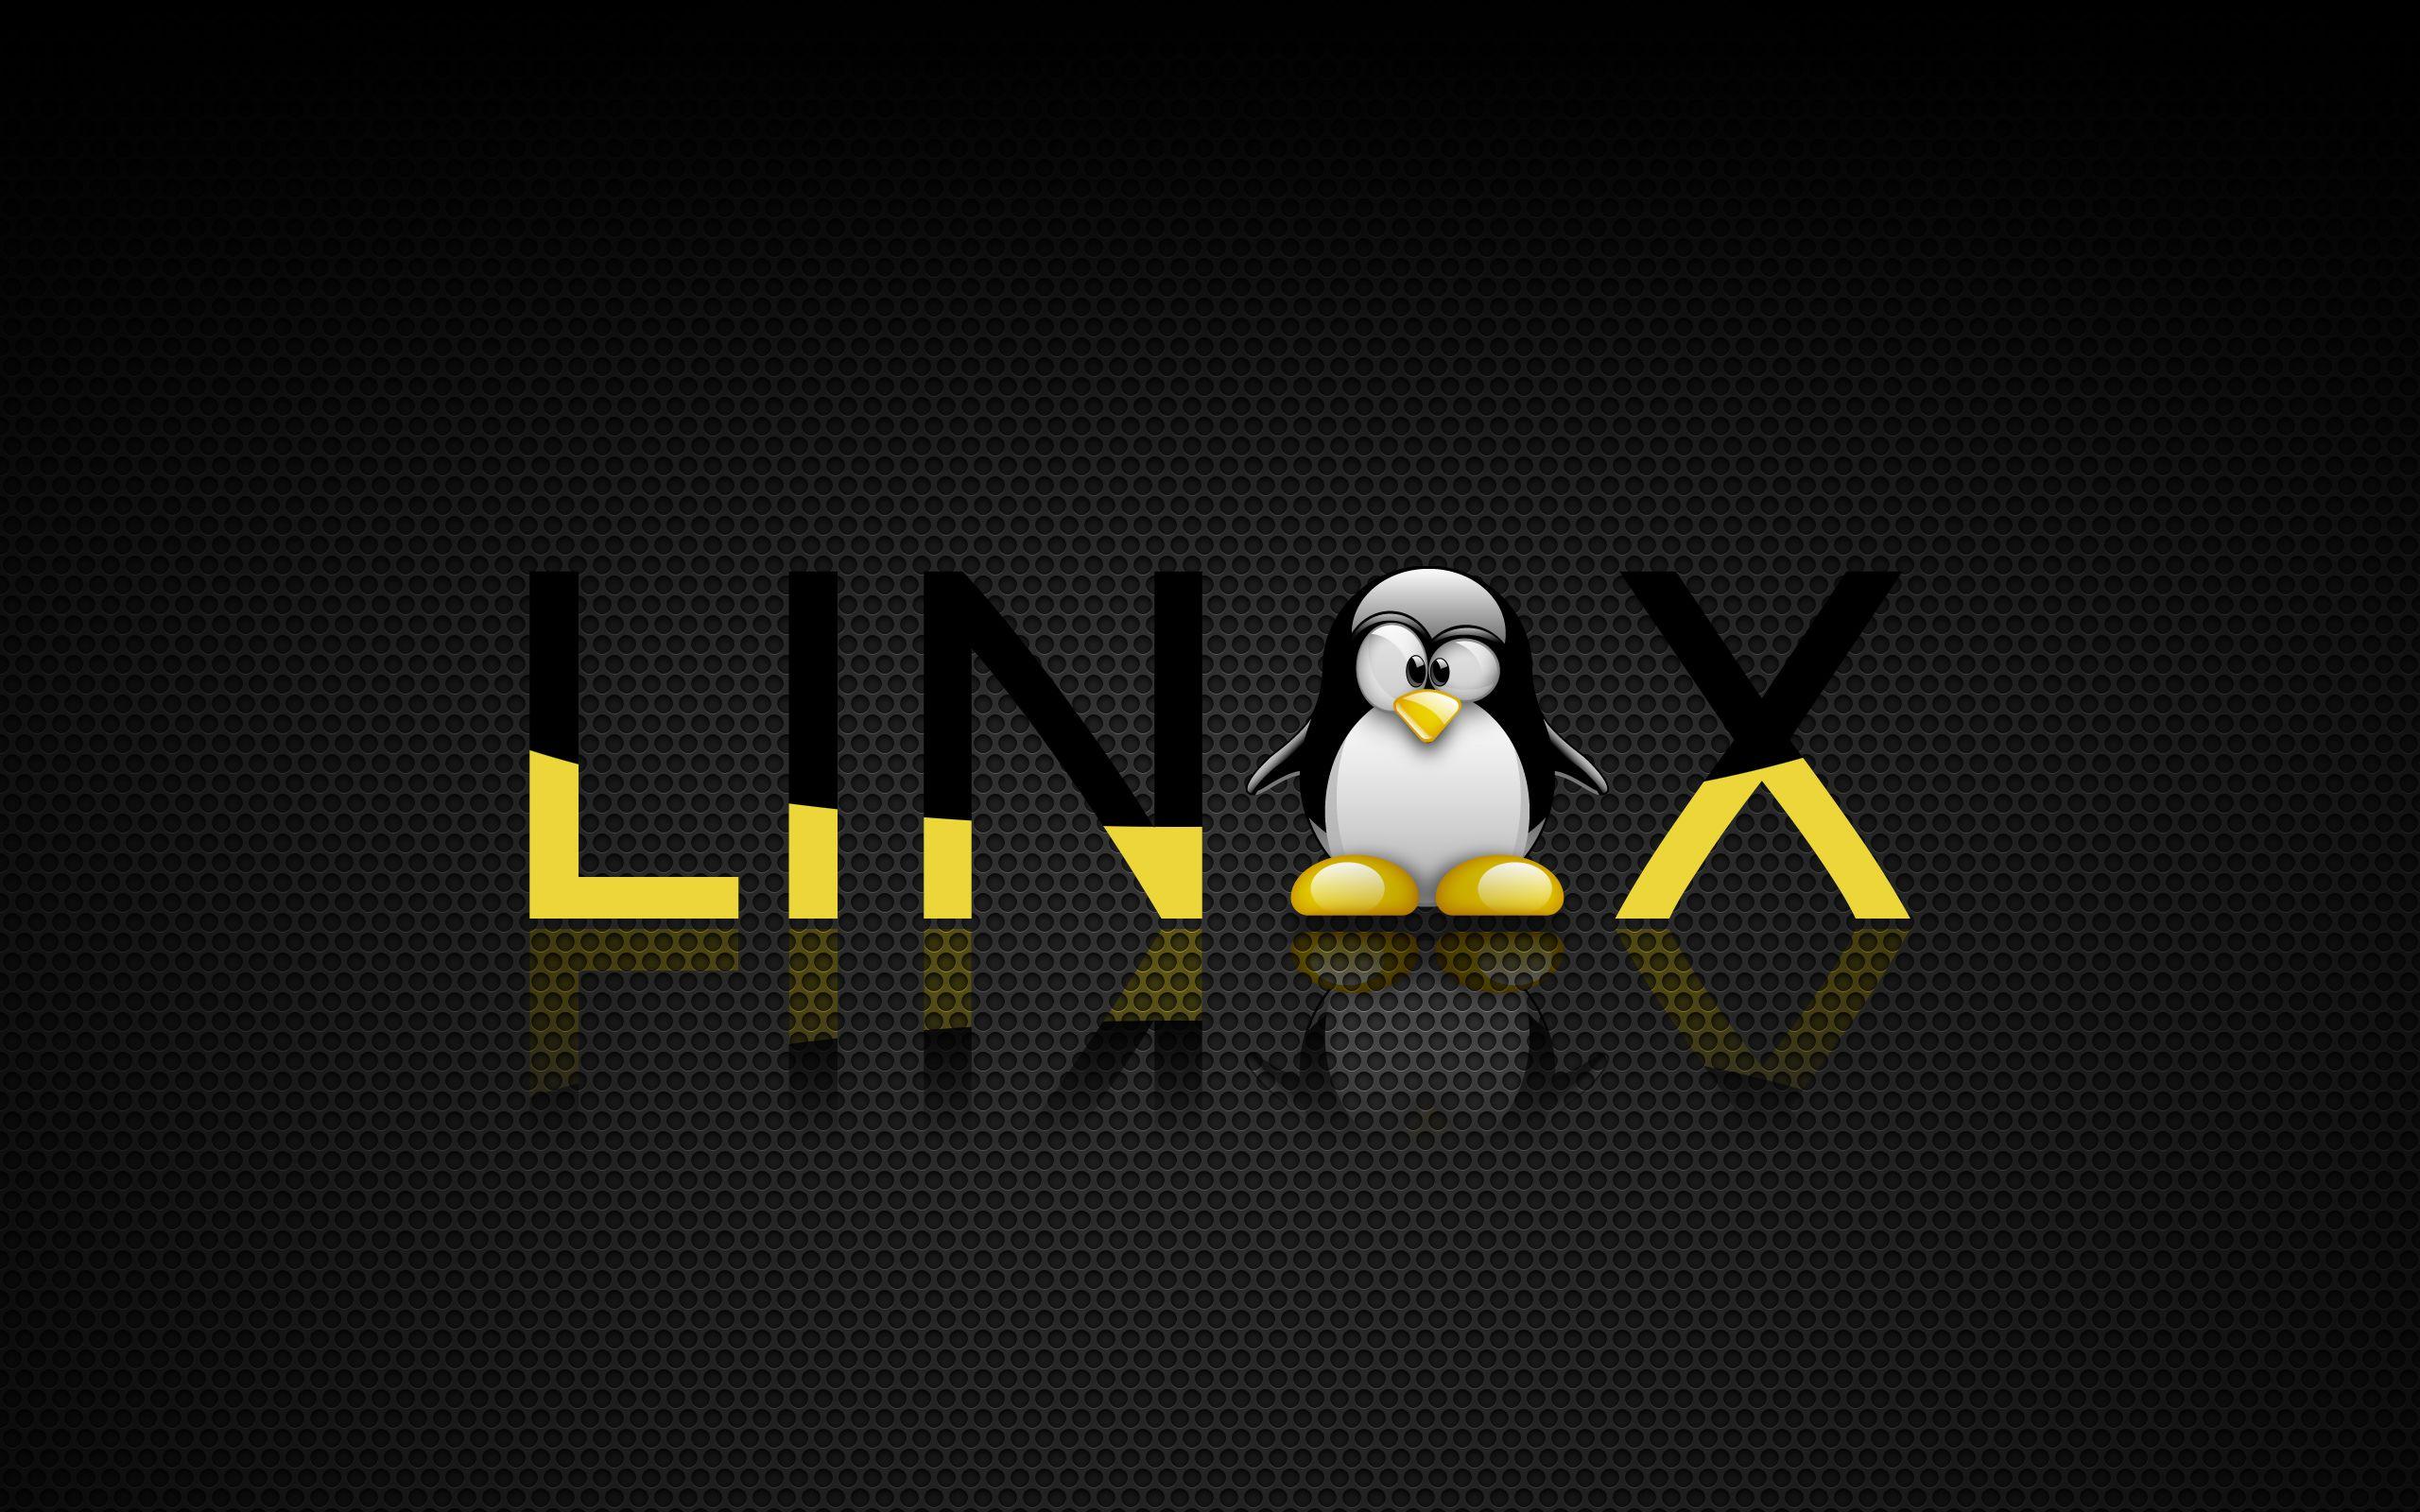 Vk linux. Линукс. Заставка Linux. Обои на рабочий стол Linux. Пингвин линукс.